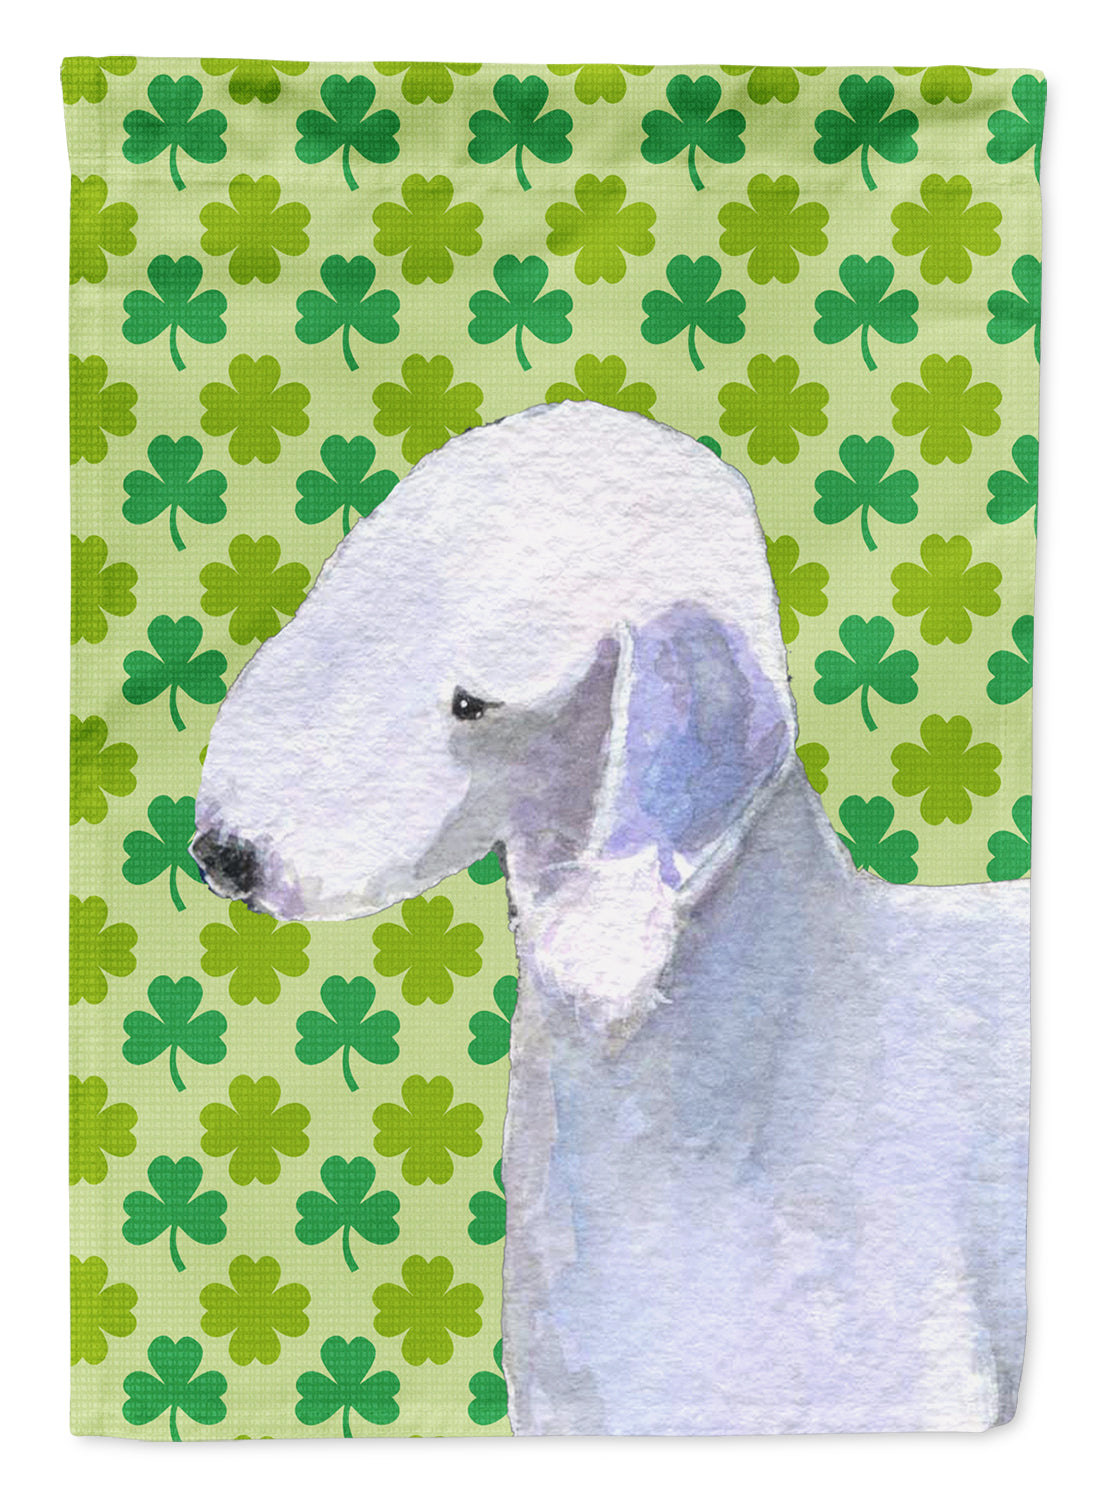 Bedlington Terrier St. Patrick's Day Shamrock Portrait Flag Canvas House Size  the-store.com.